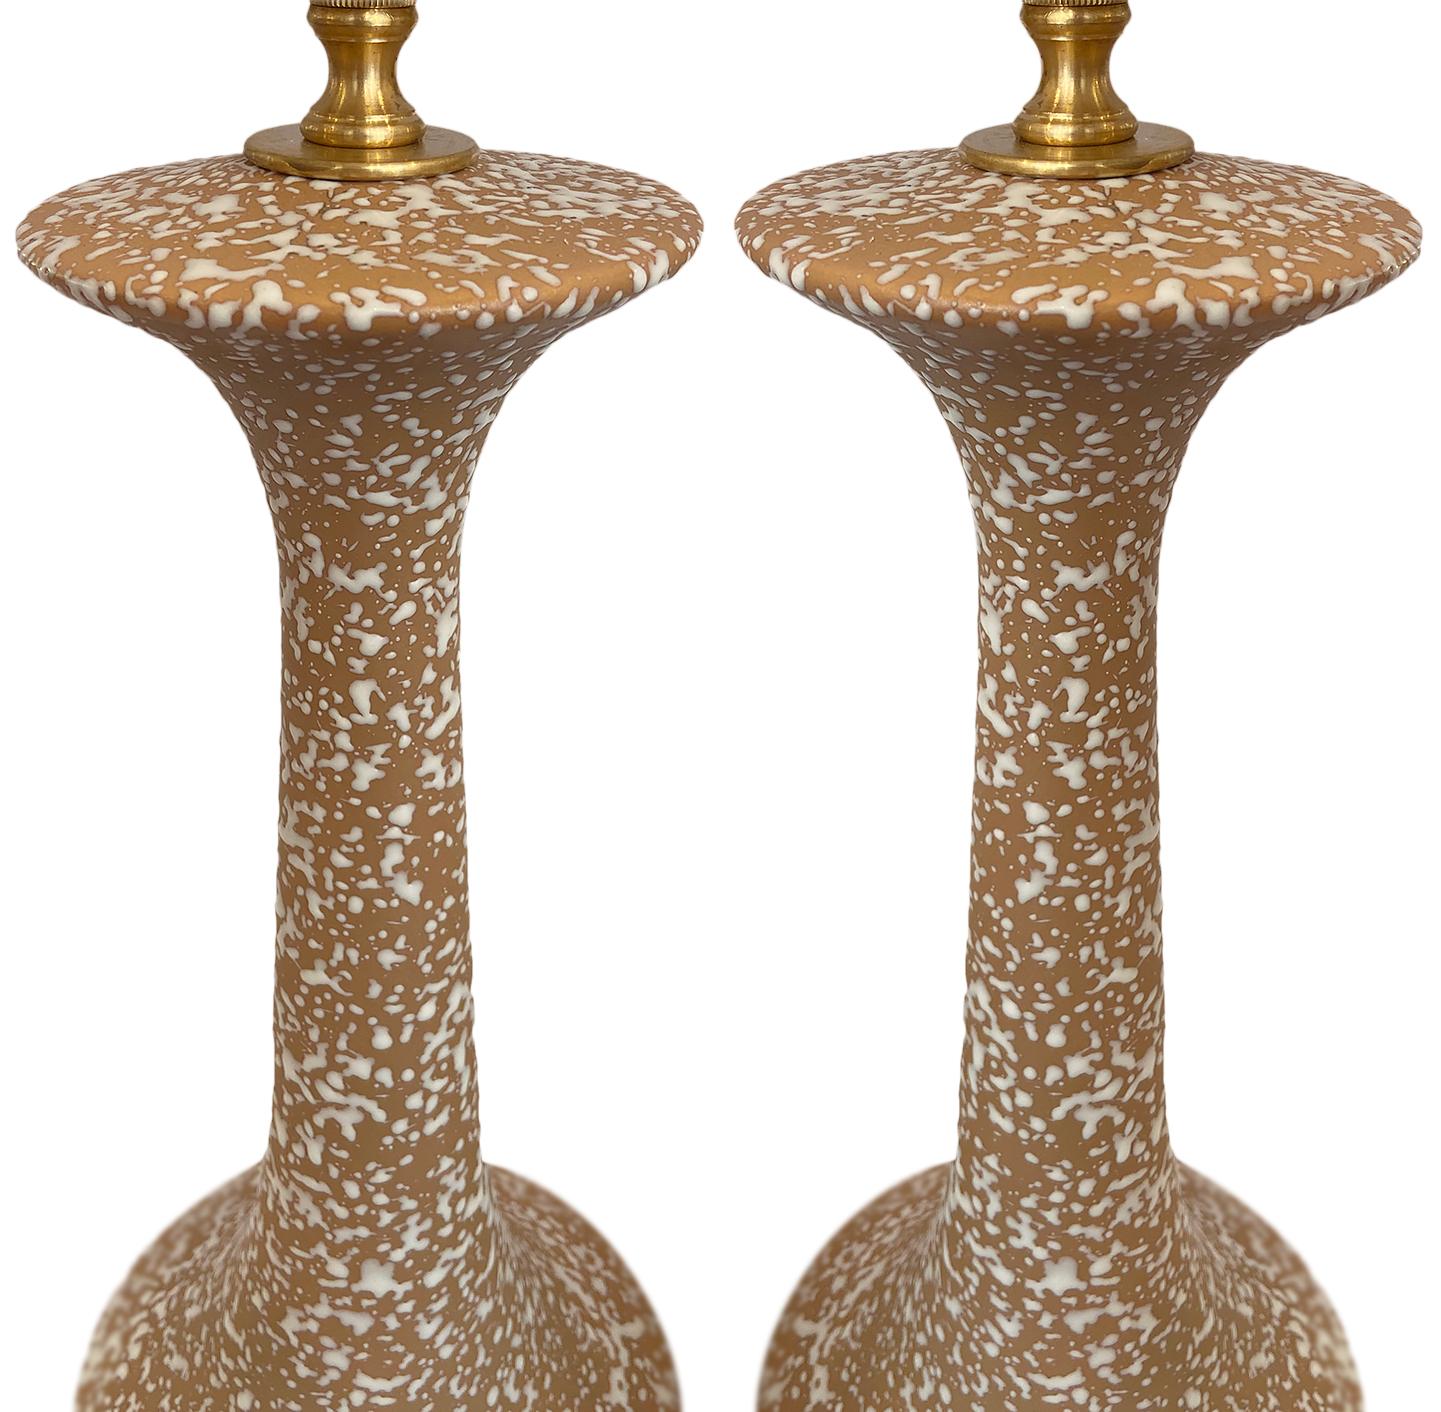 Une paire de lampes en porcelaine italienne datant des années 1940.

Mesures :
Hauteur : 19.5